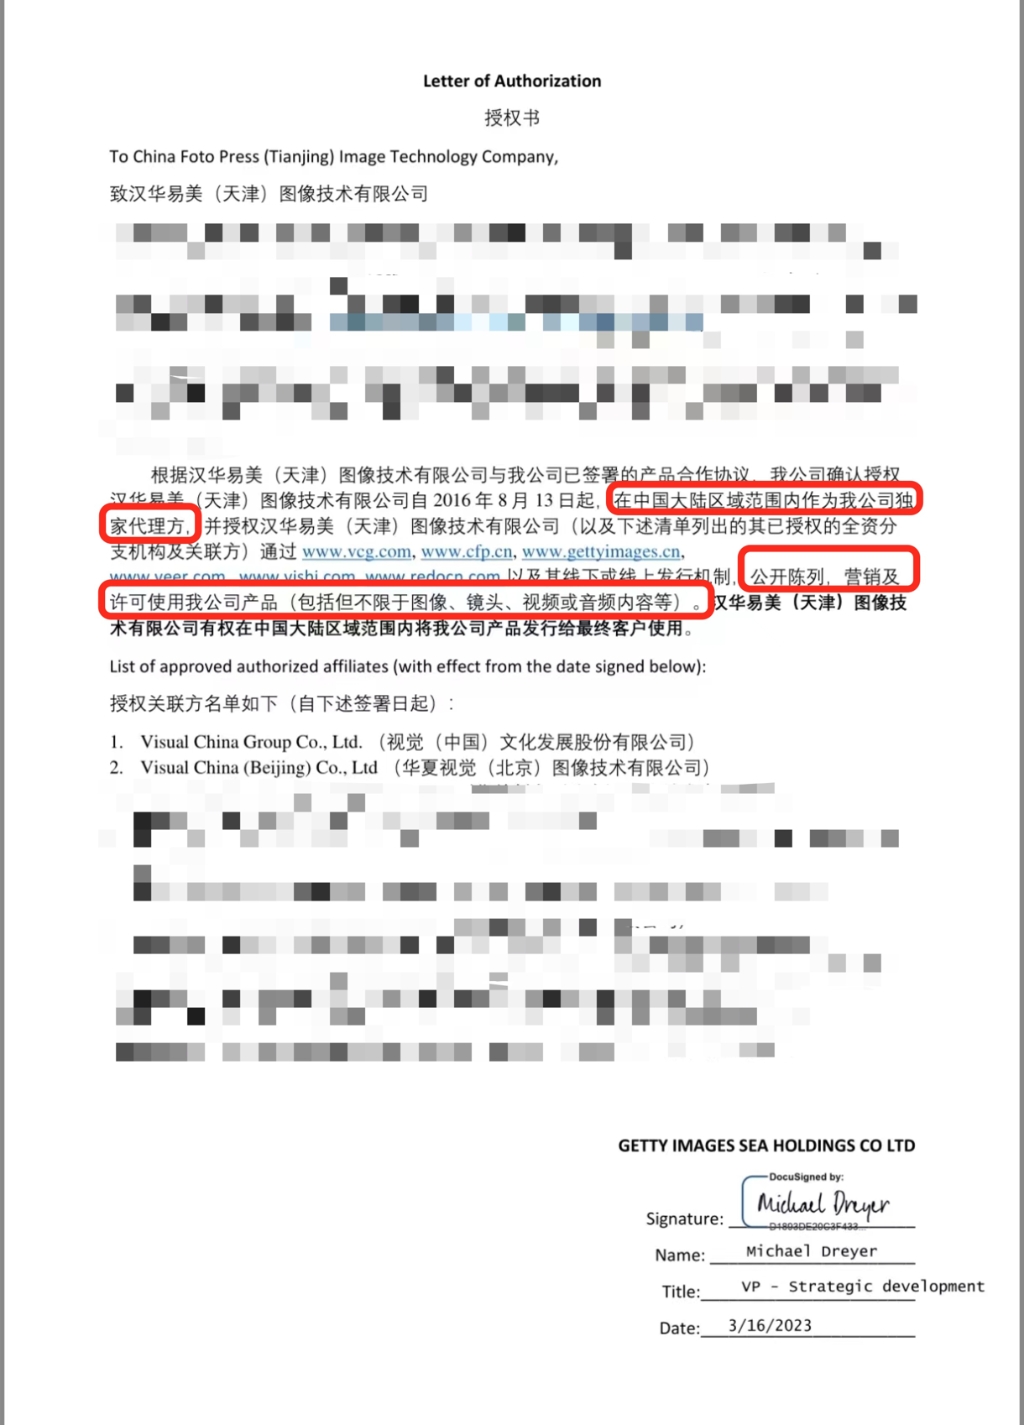 1、视觉中国提供给华龙网Getty对其的授权文件。